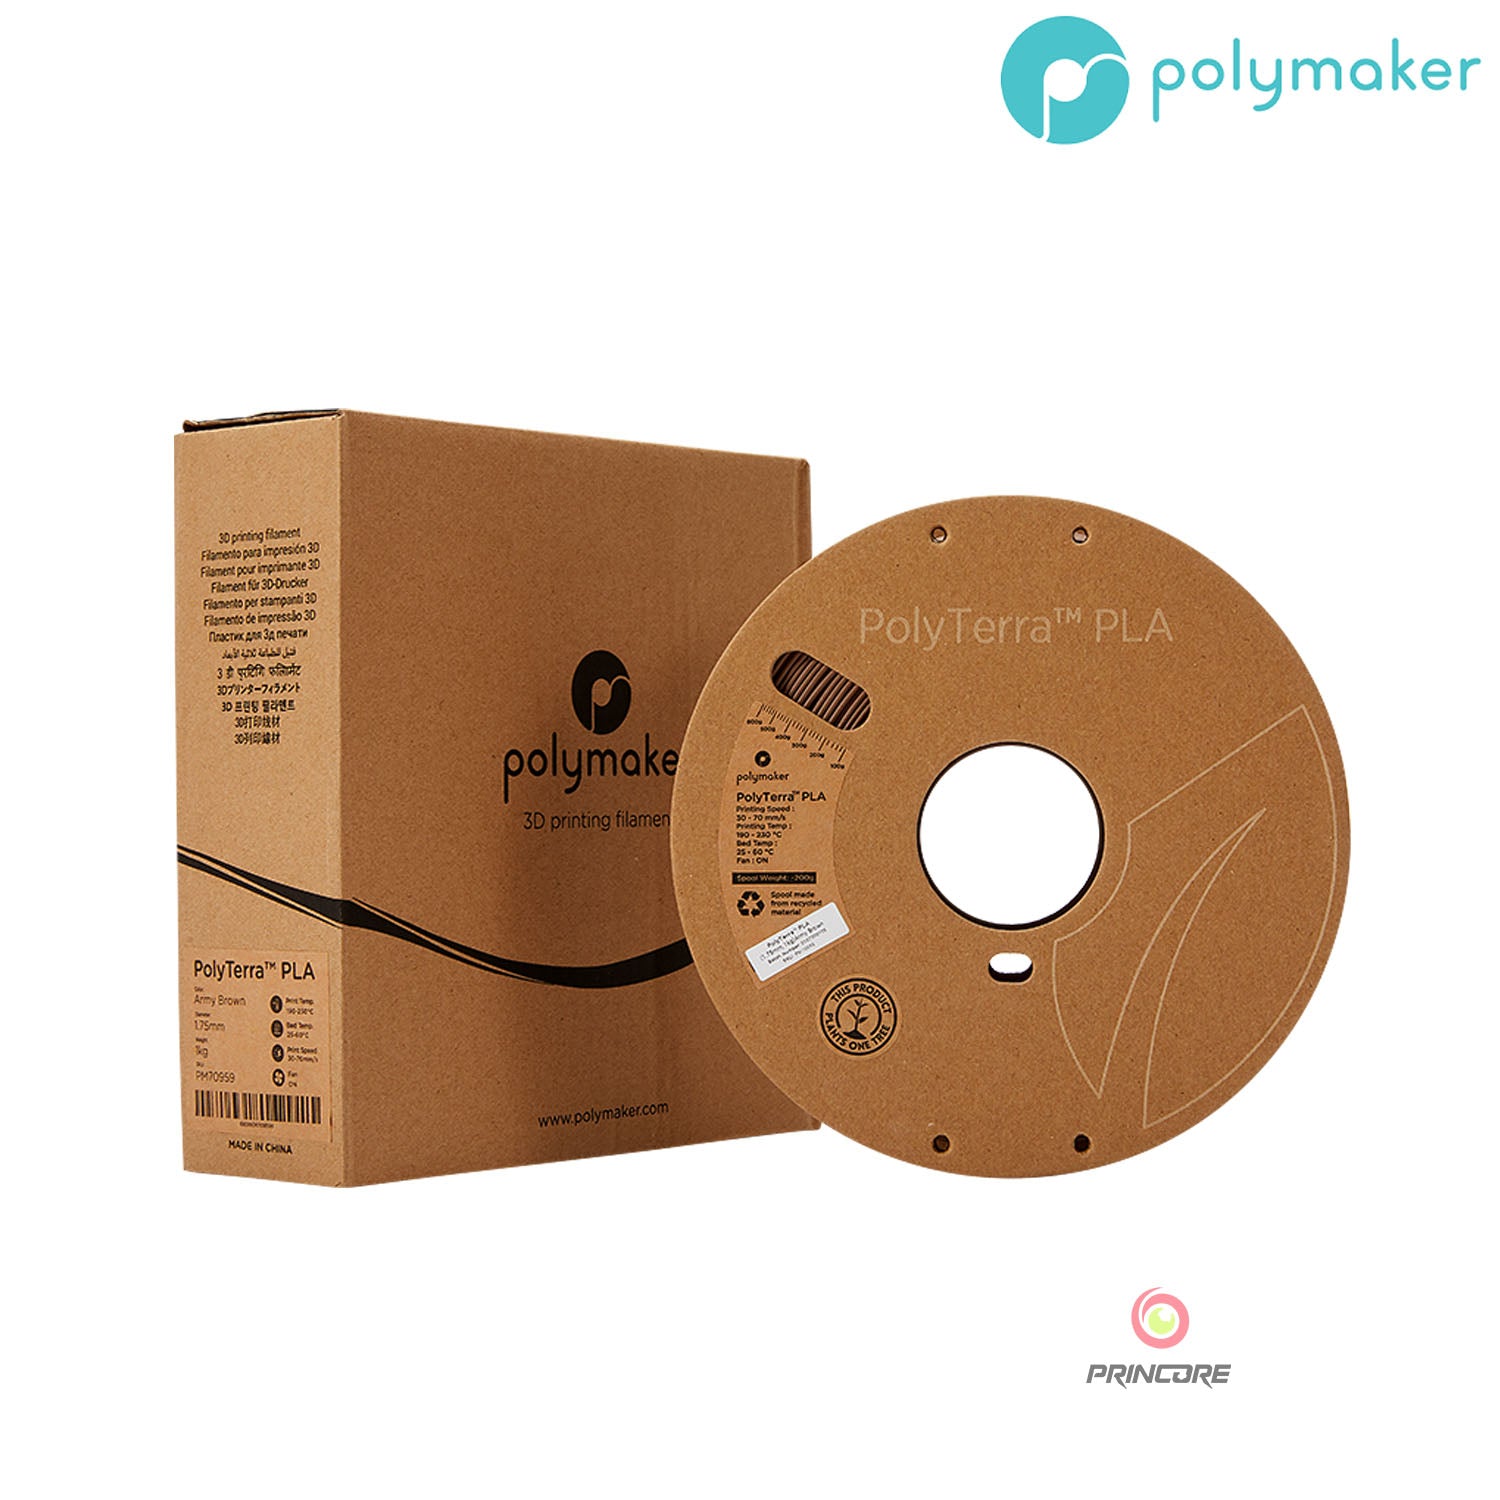 Polymaker PolyTerra™ PLA - Army Brown [1.75mm] (19,90€/Kg)